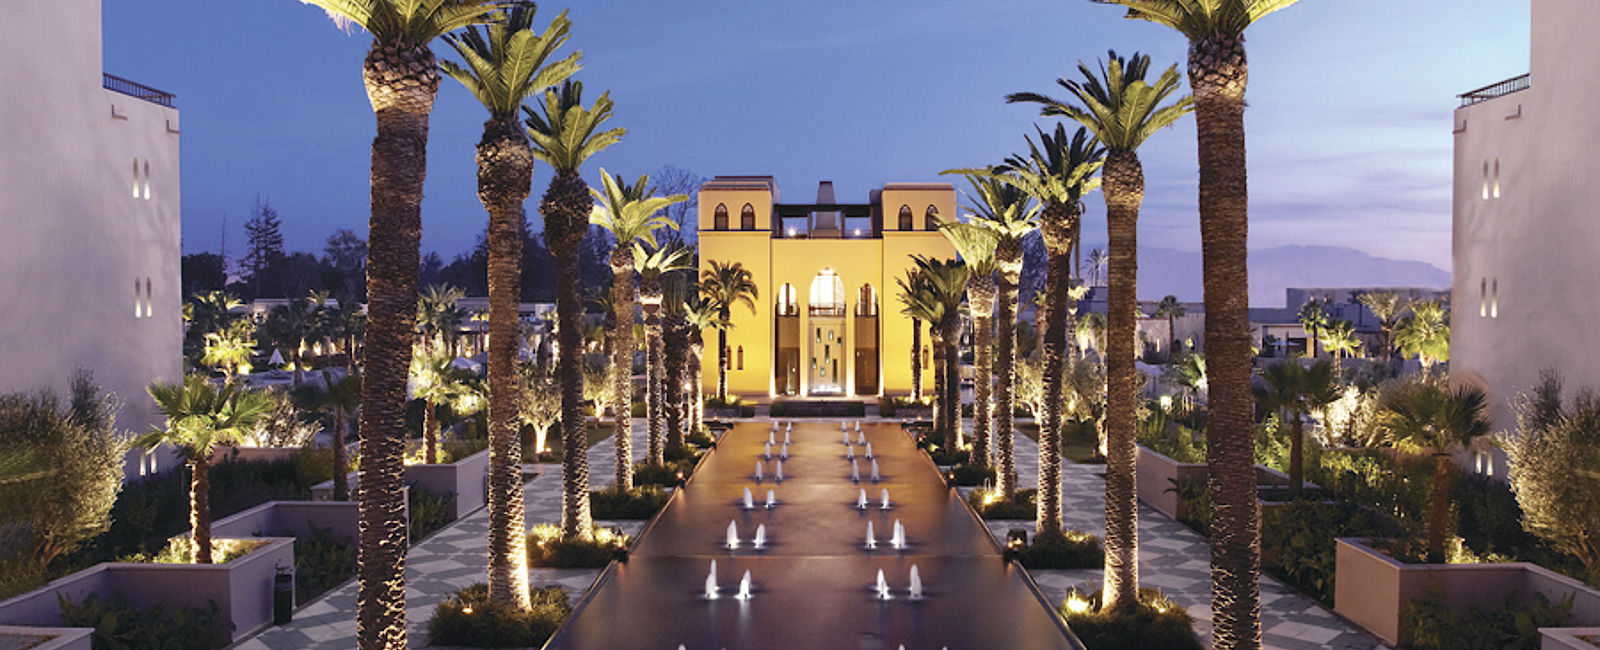 VERY SPECIAL HOTEL
 Four Seasons Hotel Marrakech 
 Arabesque de luxe 